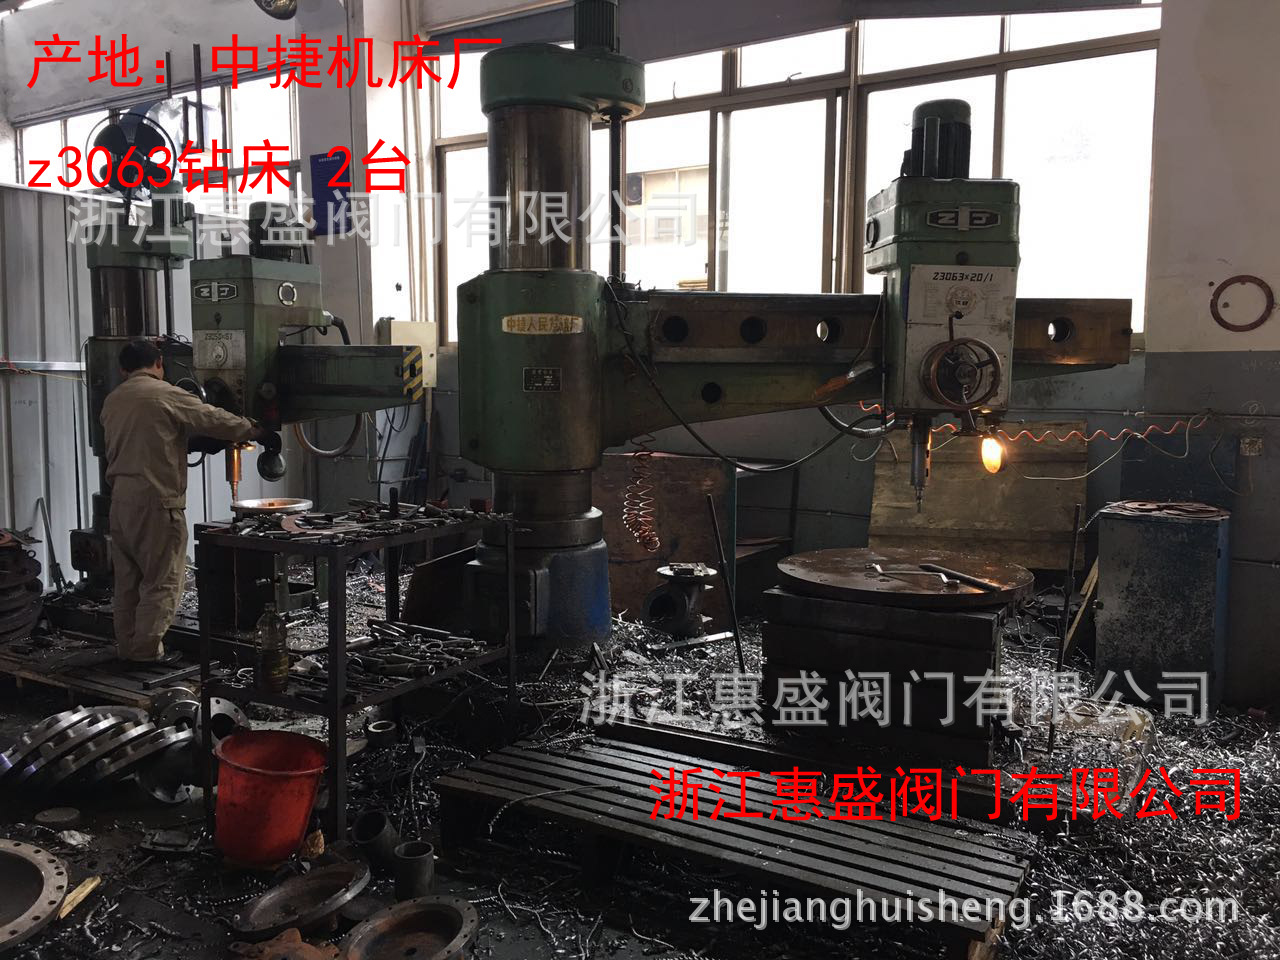 上海静音式止回阀型号:KRVG,静音式止回阀型号 多弹簧式止回阀厂家价格 